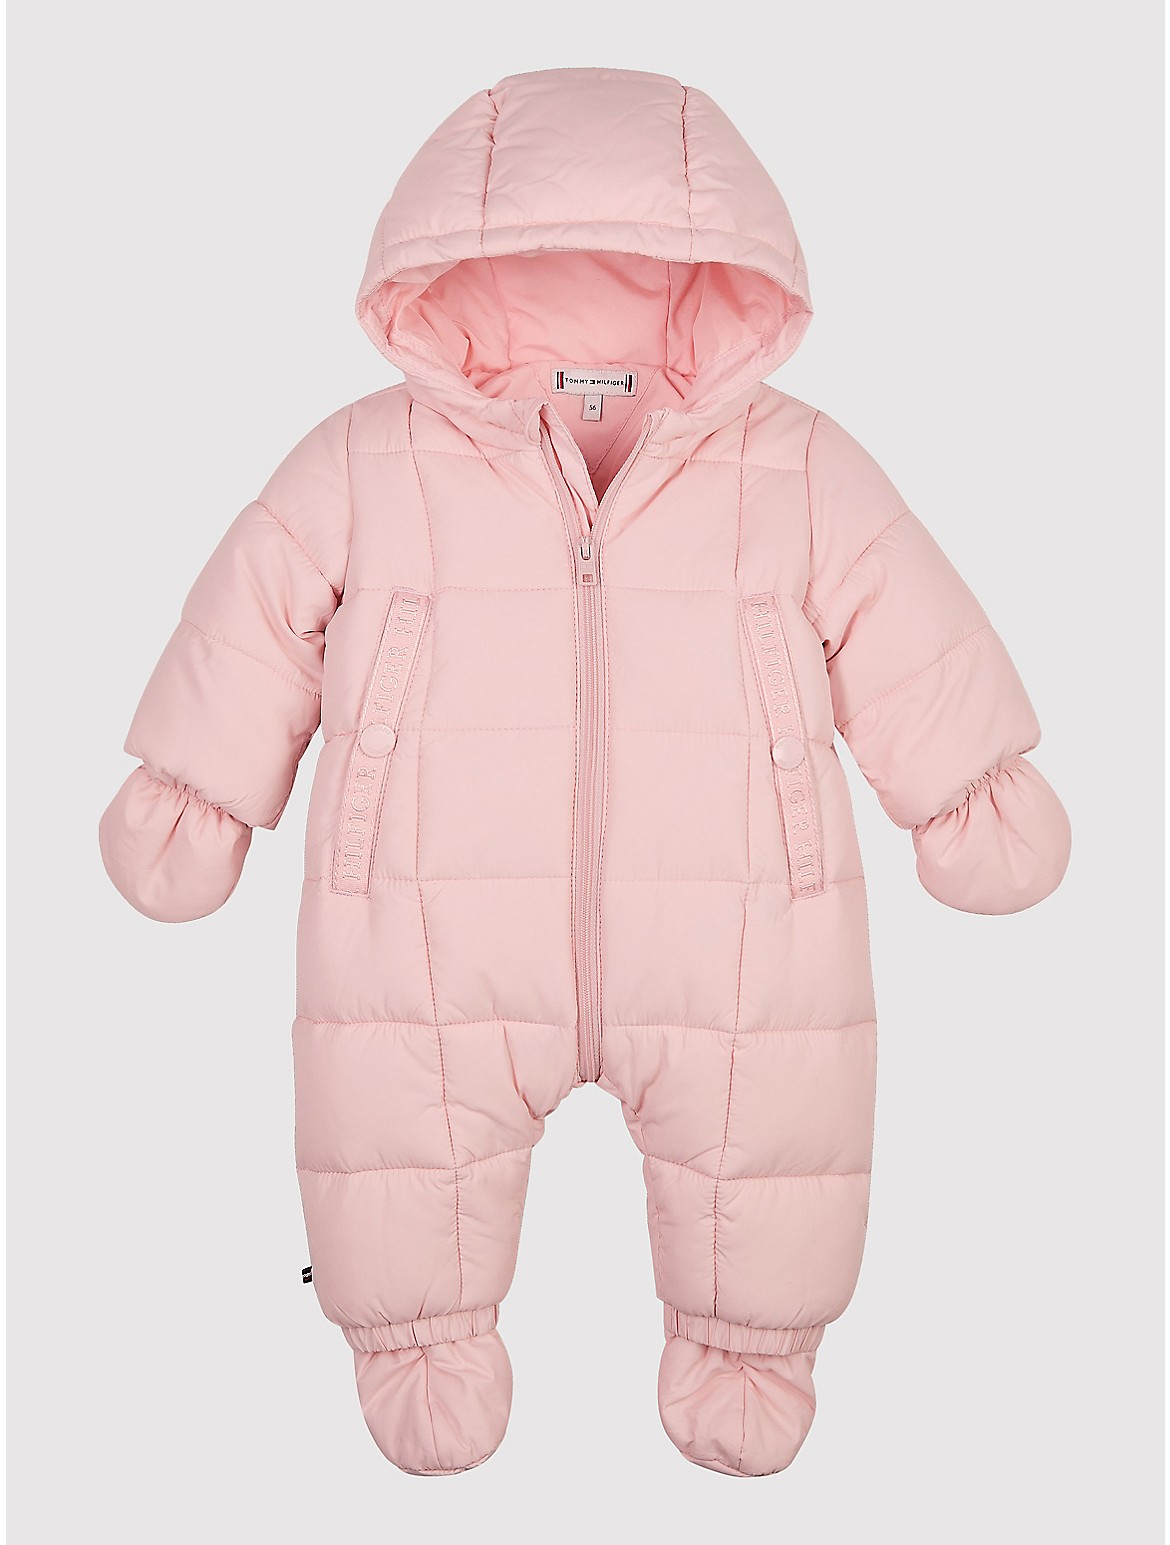 Tommy Hilfiger Babies' Ski Suit Set - Pink - 3-6M